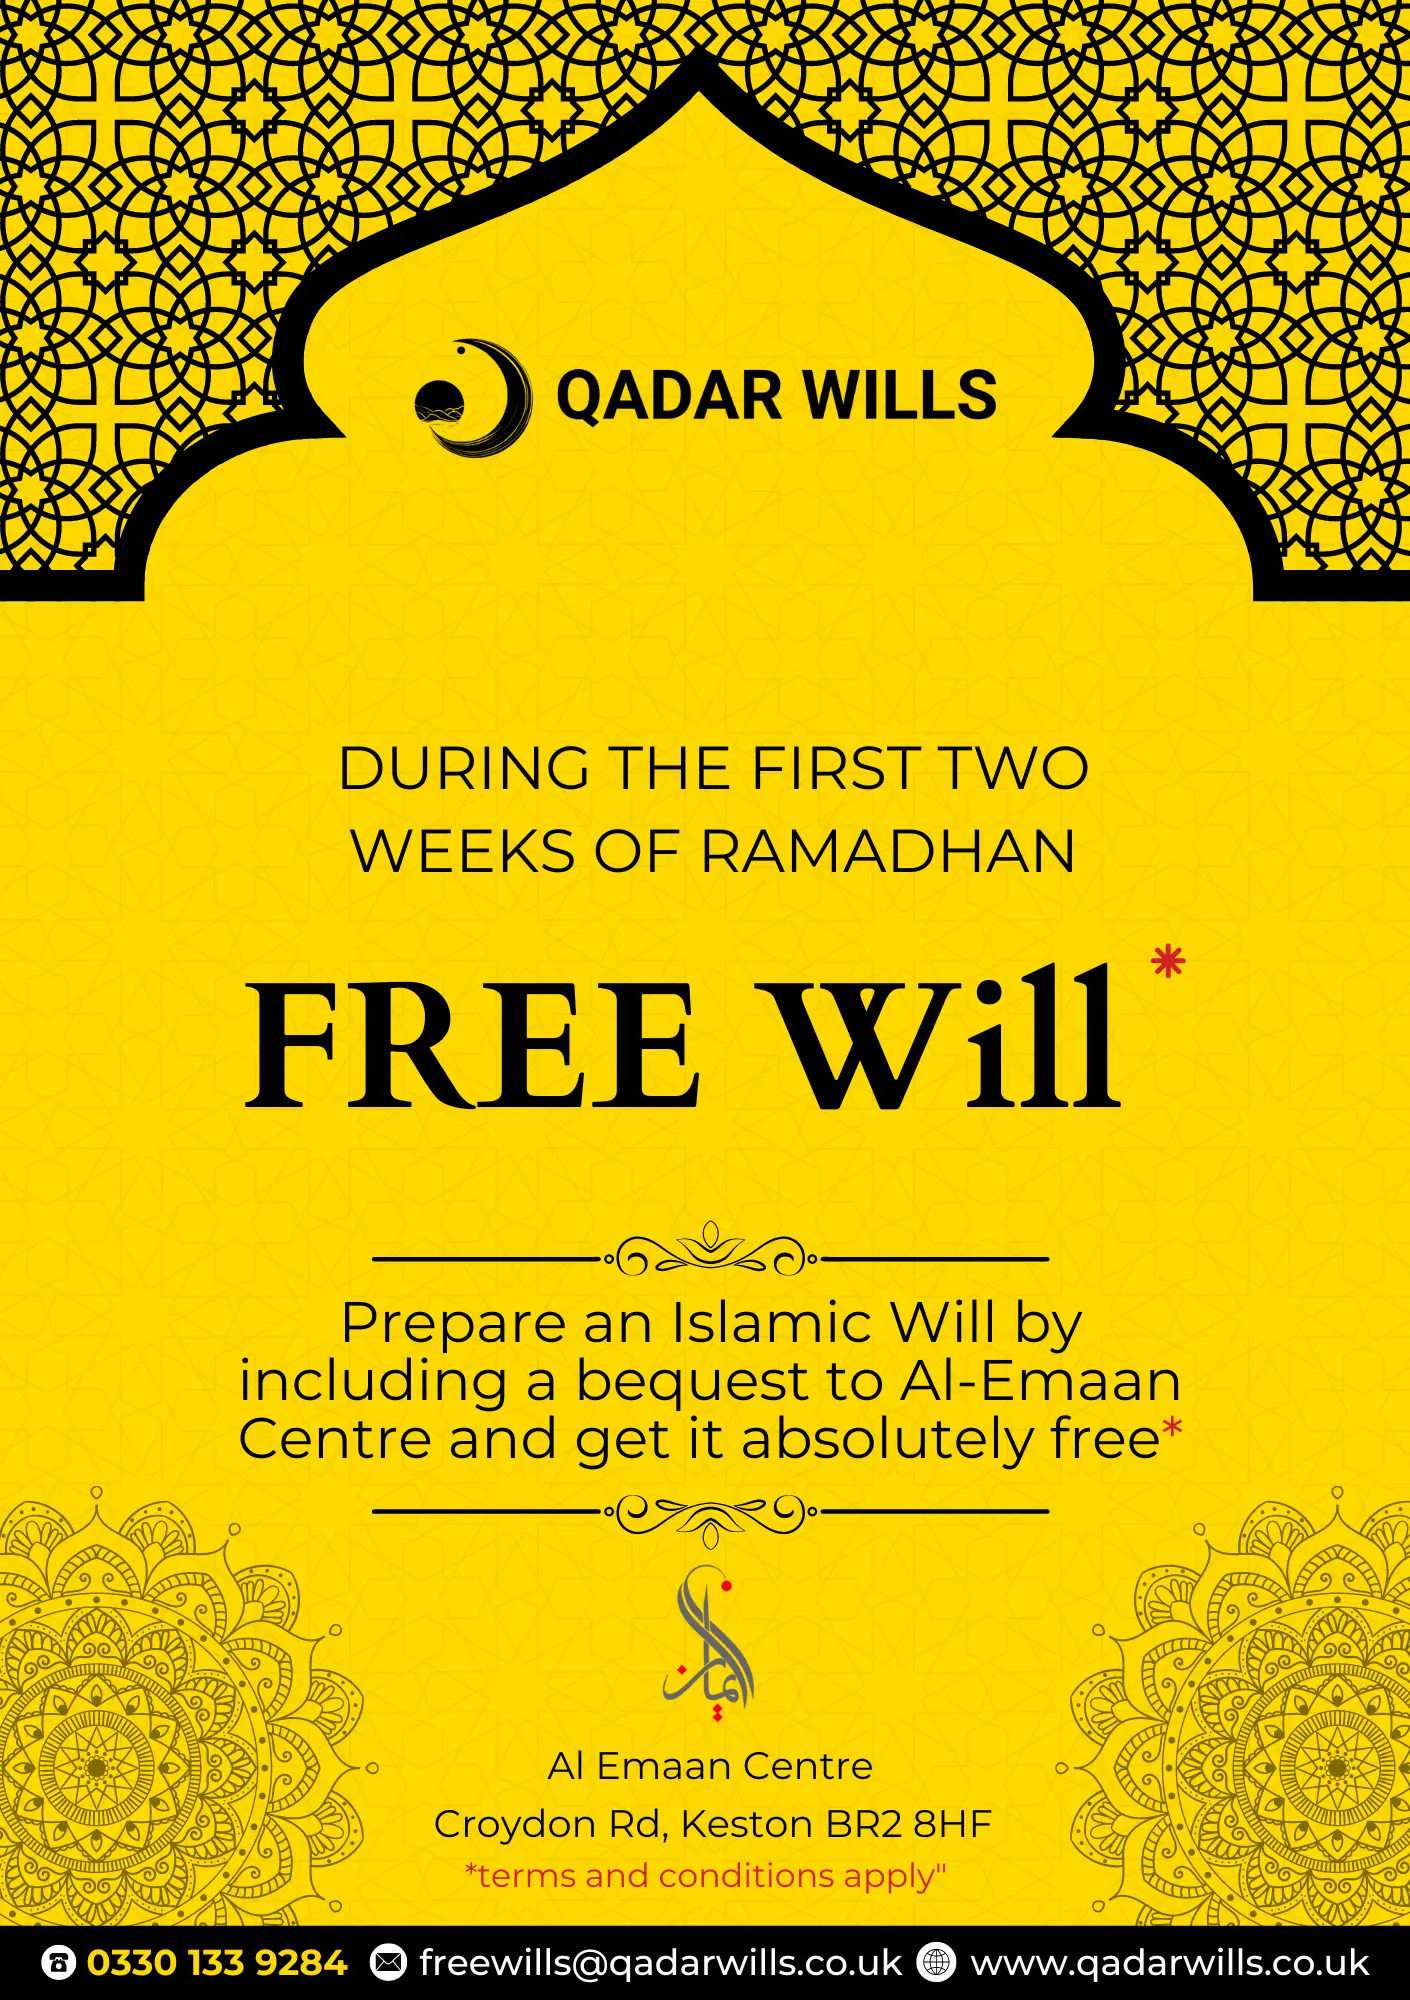 Qadar wills Free Islamic will